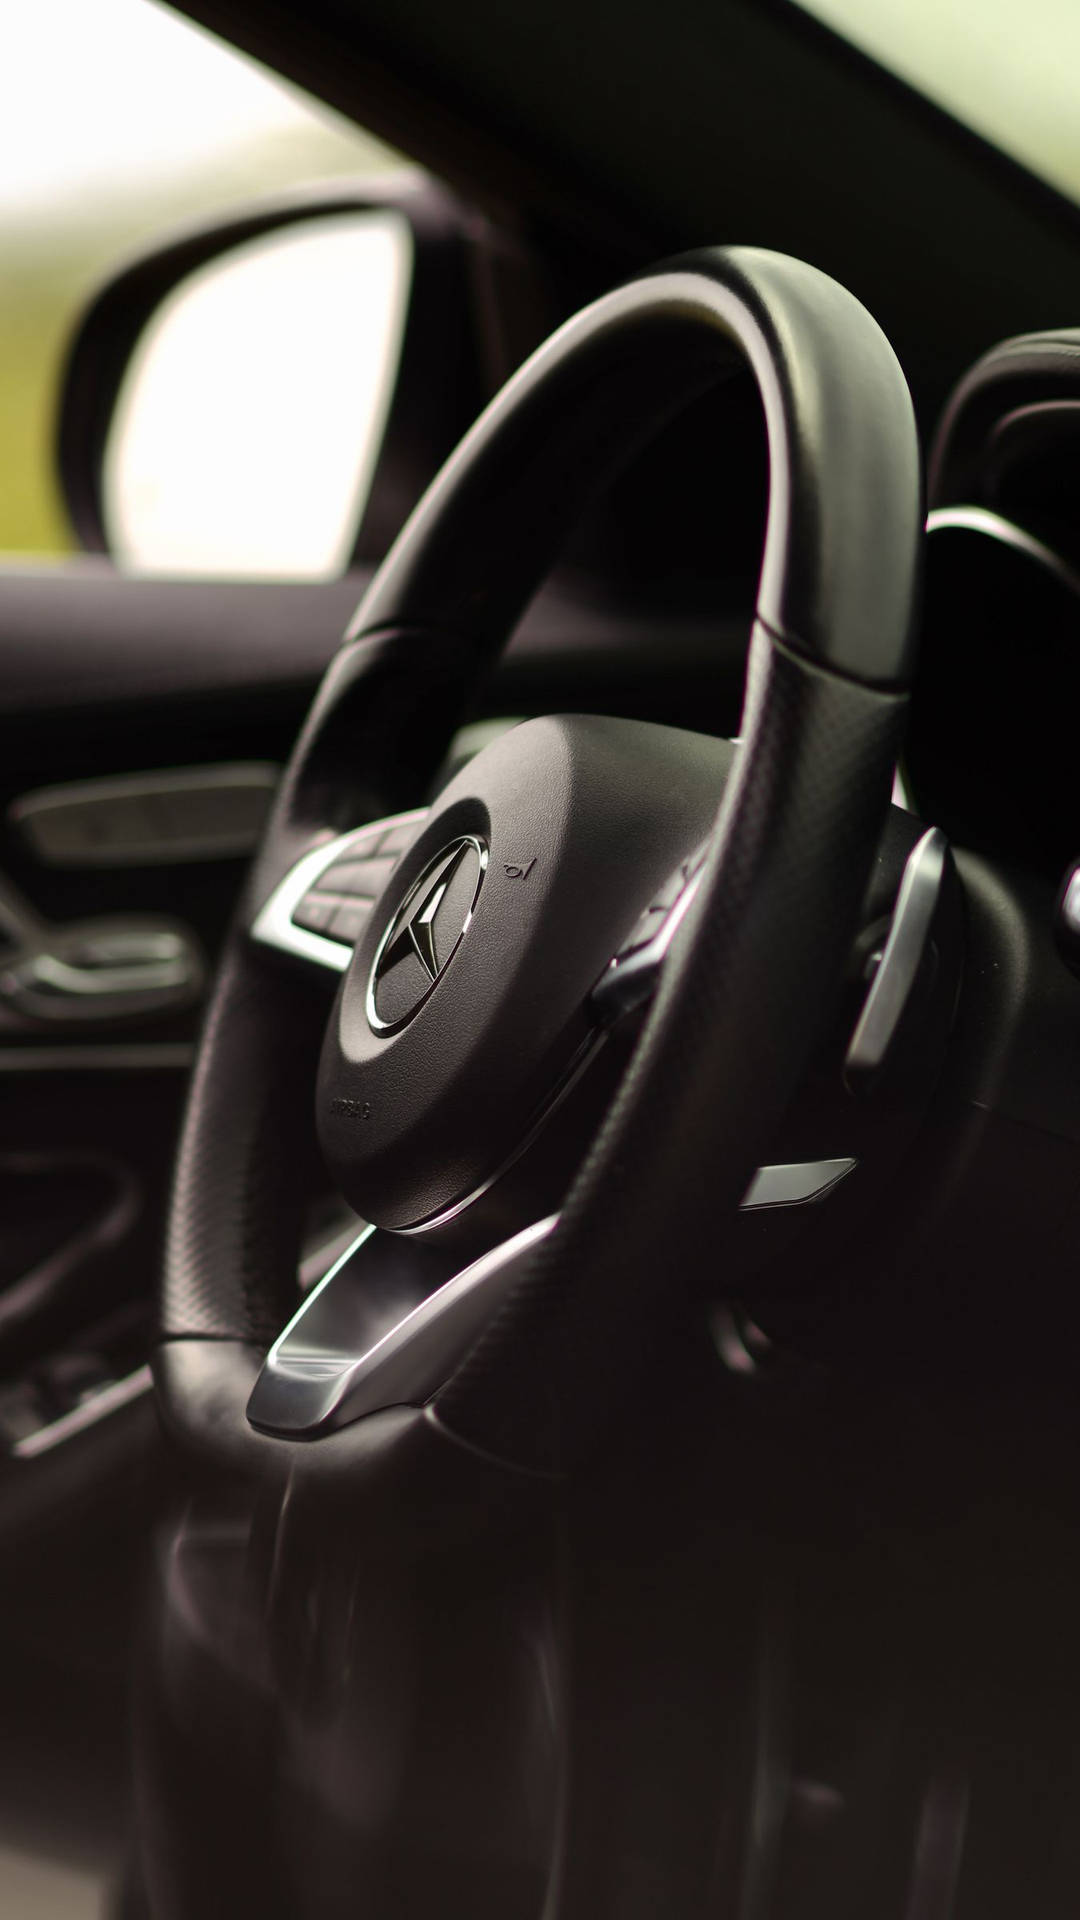 Mercedes Benz C300 Steering Wheel Wallpaper